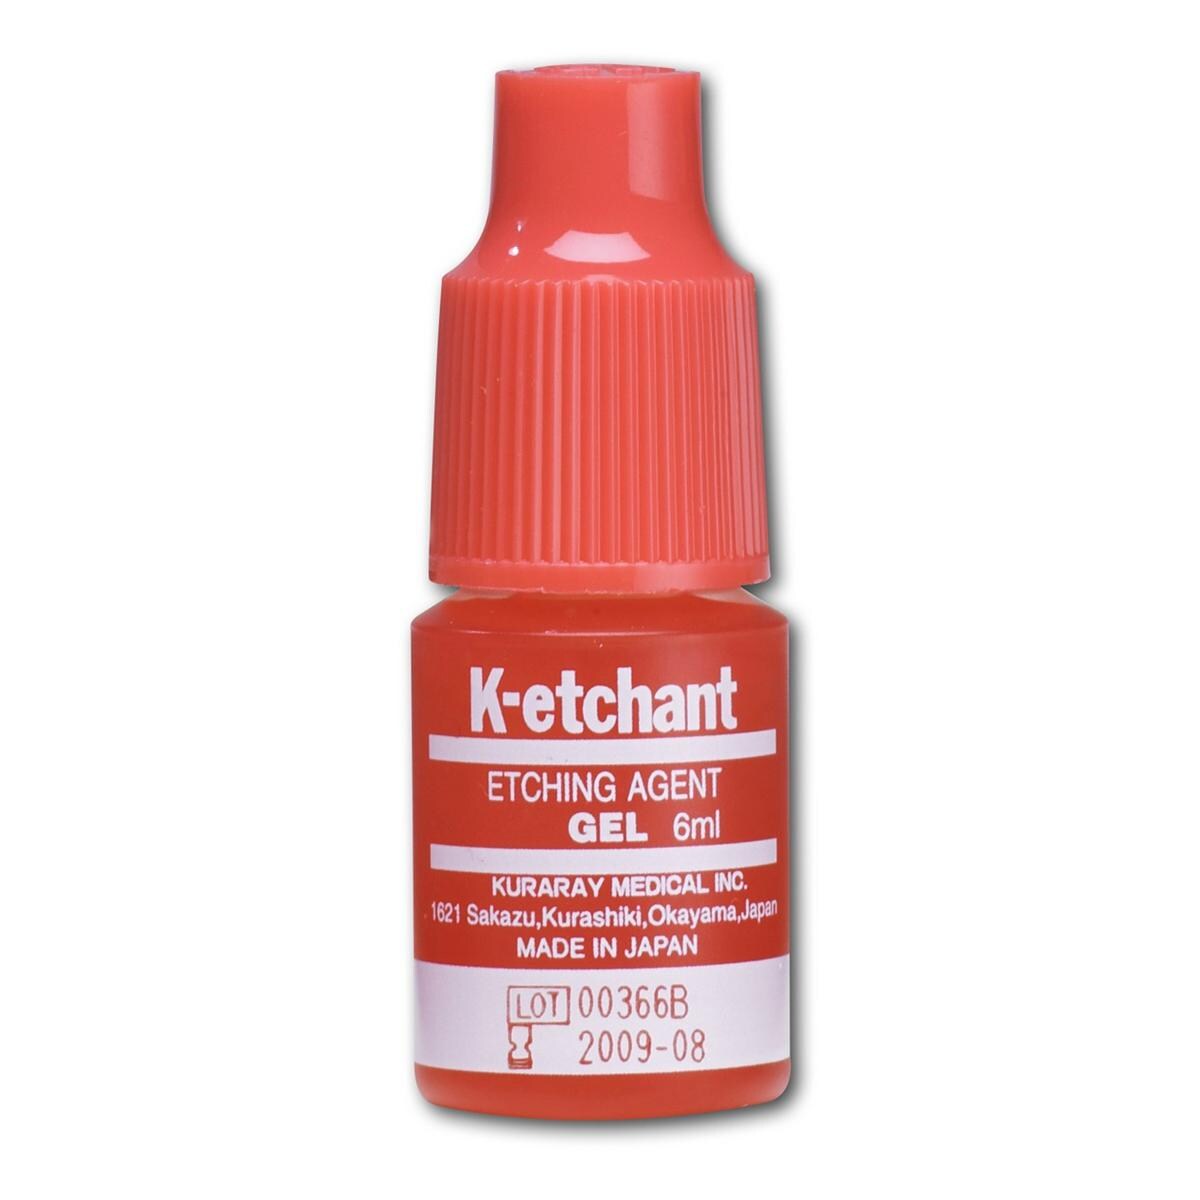 K-etchant GEL - Flasche 6 ml